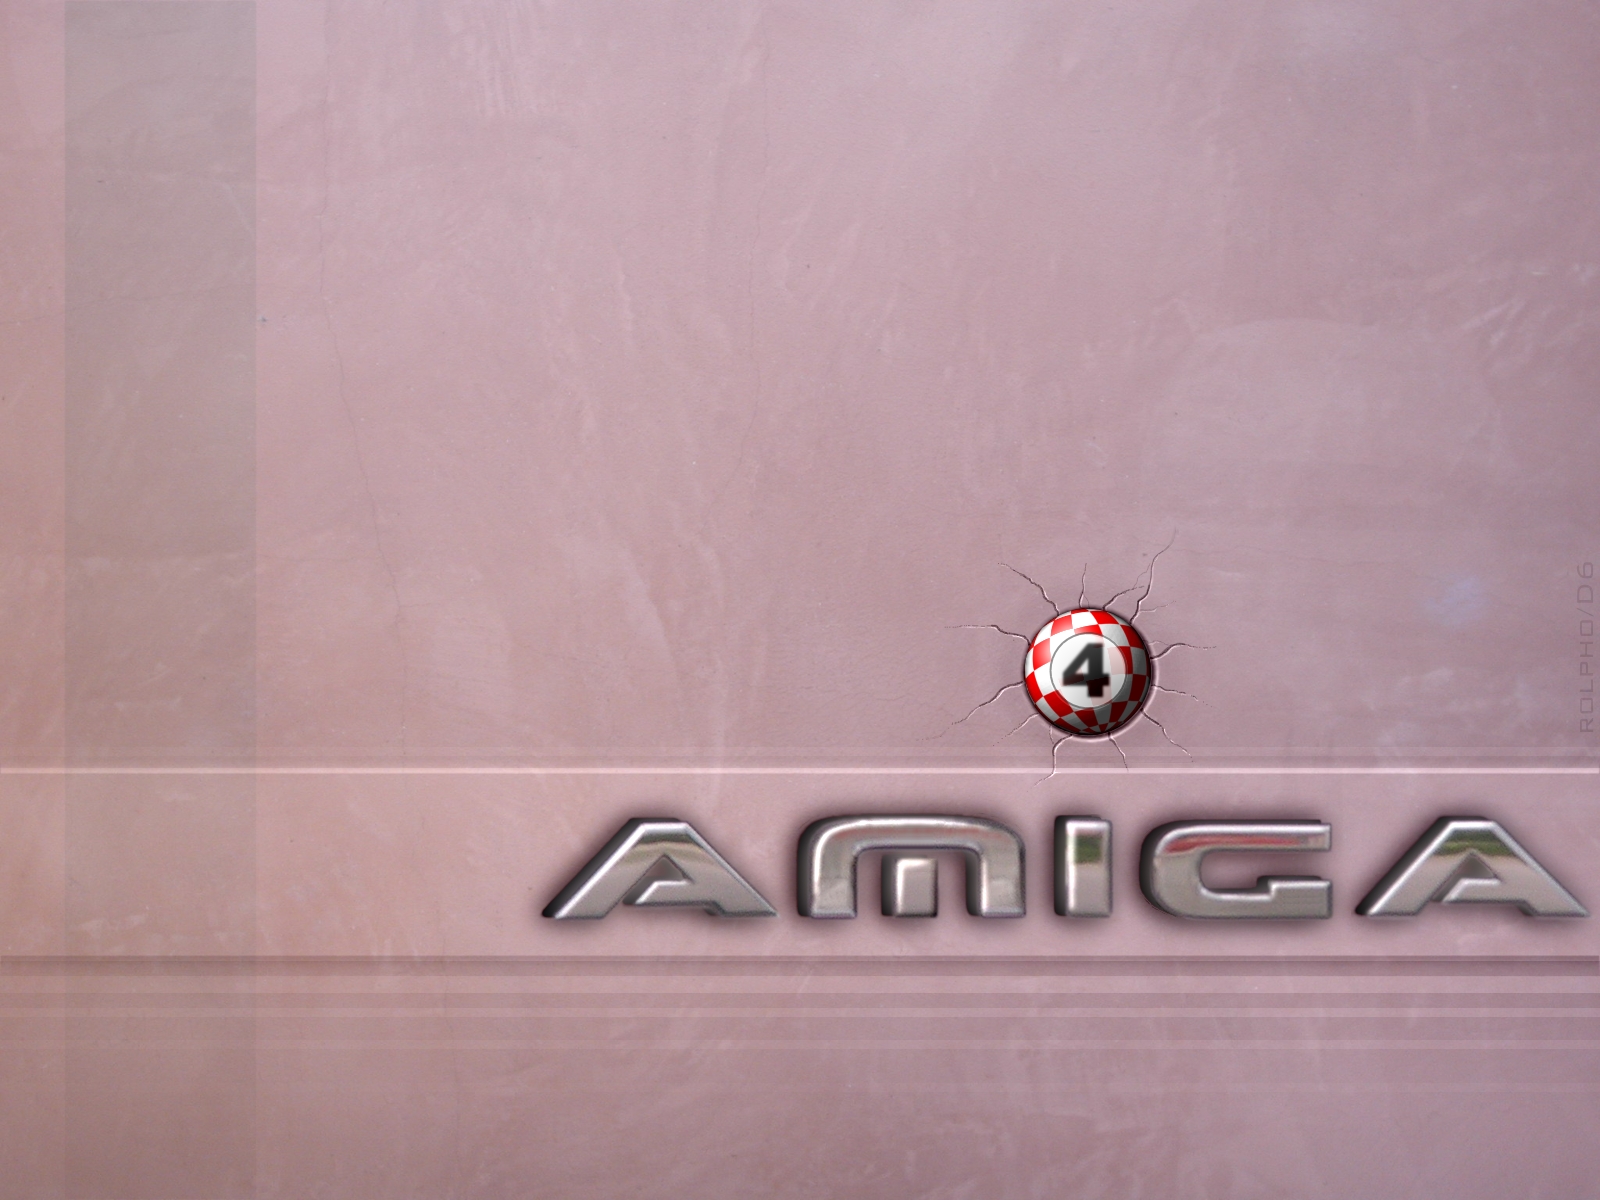 Amiga_12_1600x1200.jpg